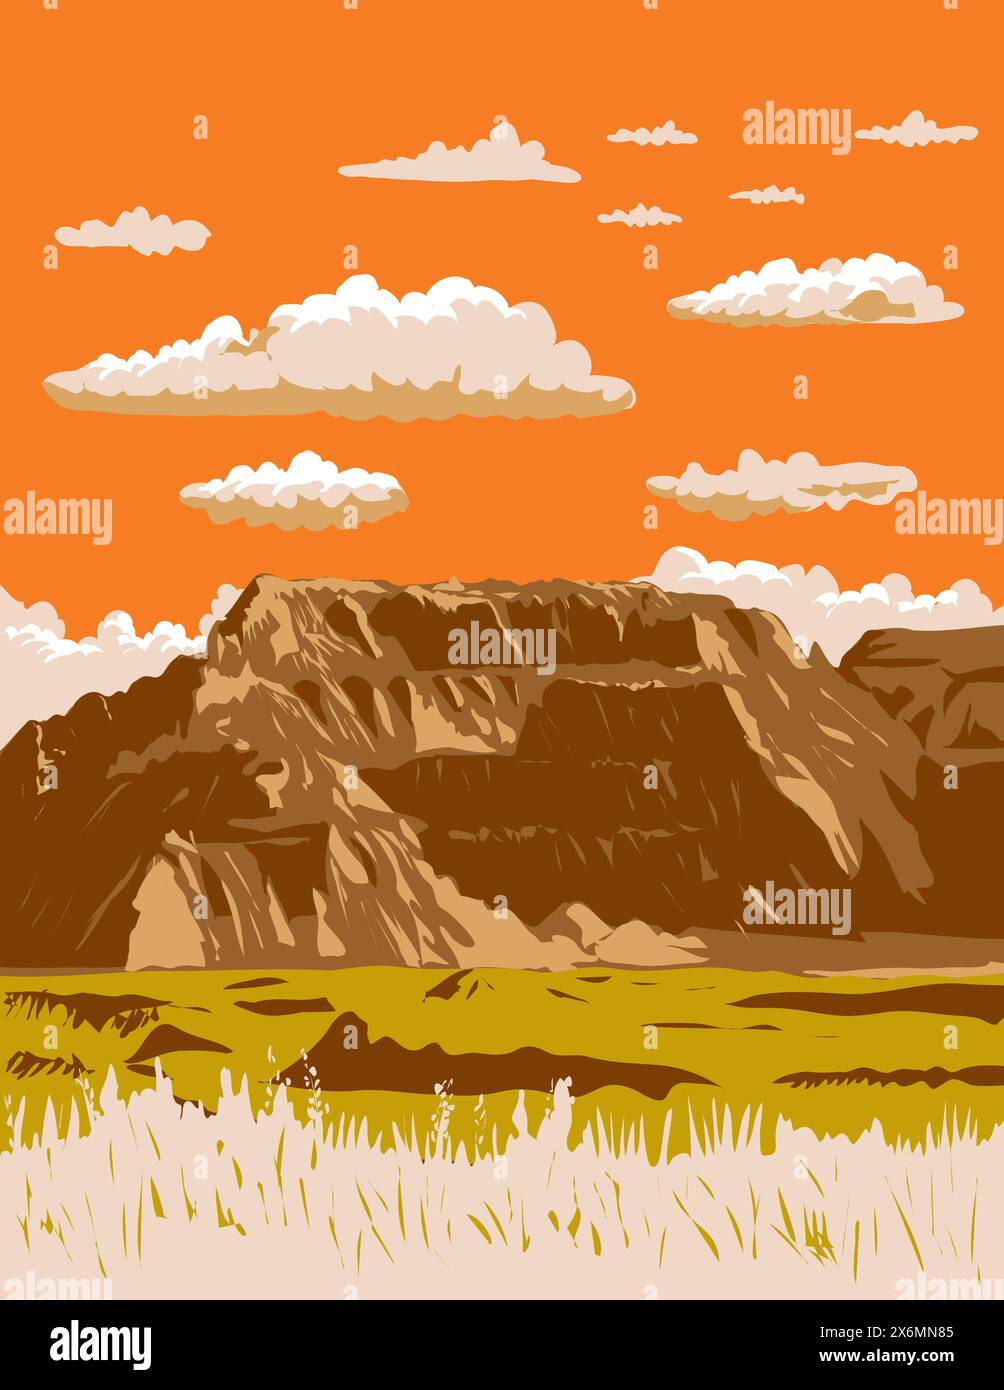 WPA affiche art de buttes fortement érodées et pinacles dans Badlands National Park situé dans le sud-ouest du Dakota du Sud États-Unis fait dans les travaux projet administra Illustration de Vecteur